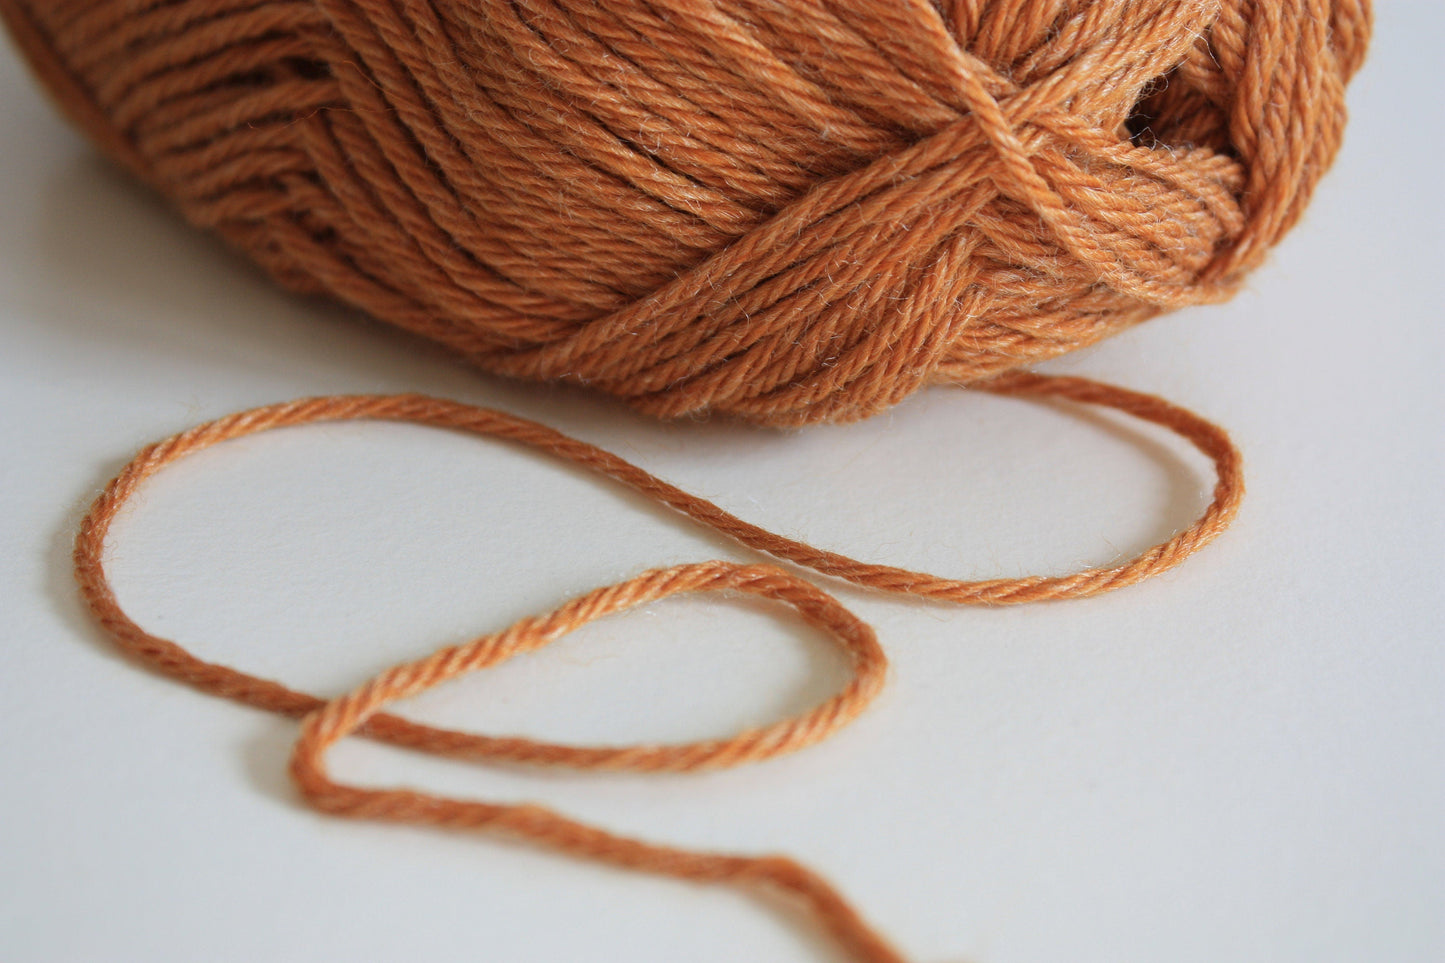 Wool Yarn For Knitting, Crochet & Weaving - Merino & Blend